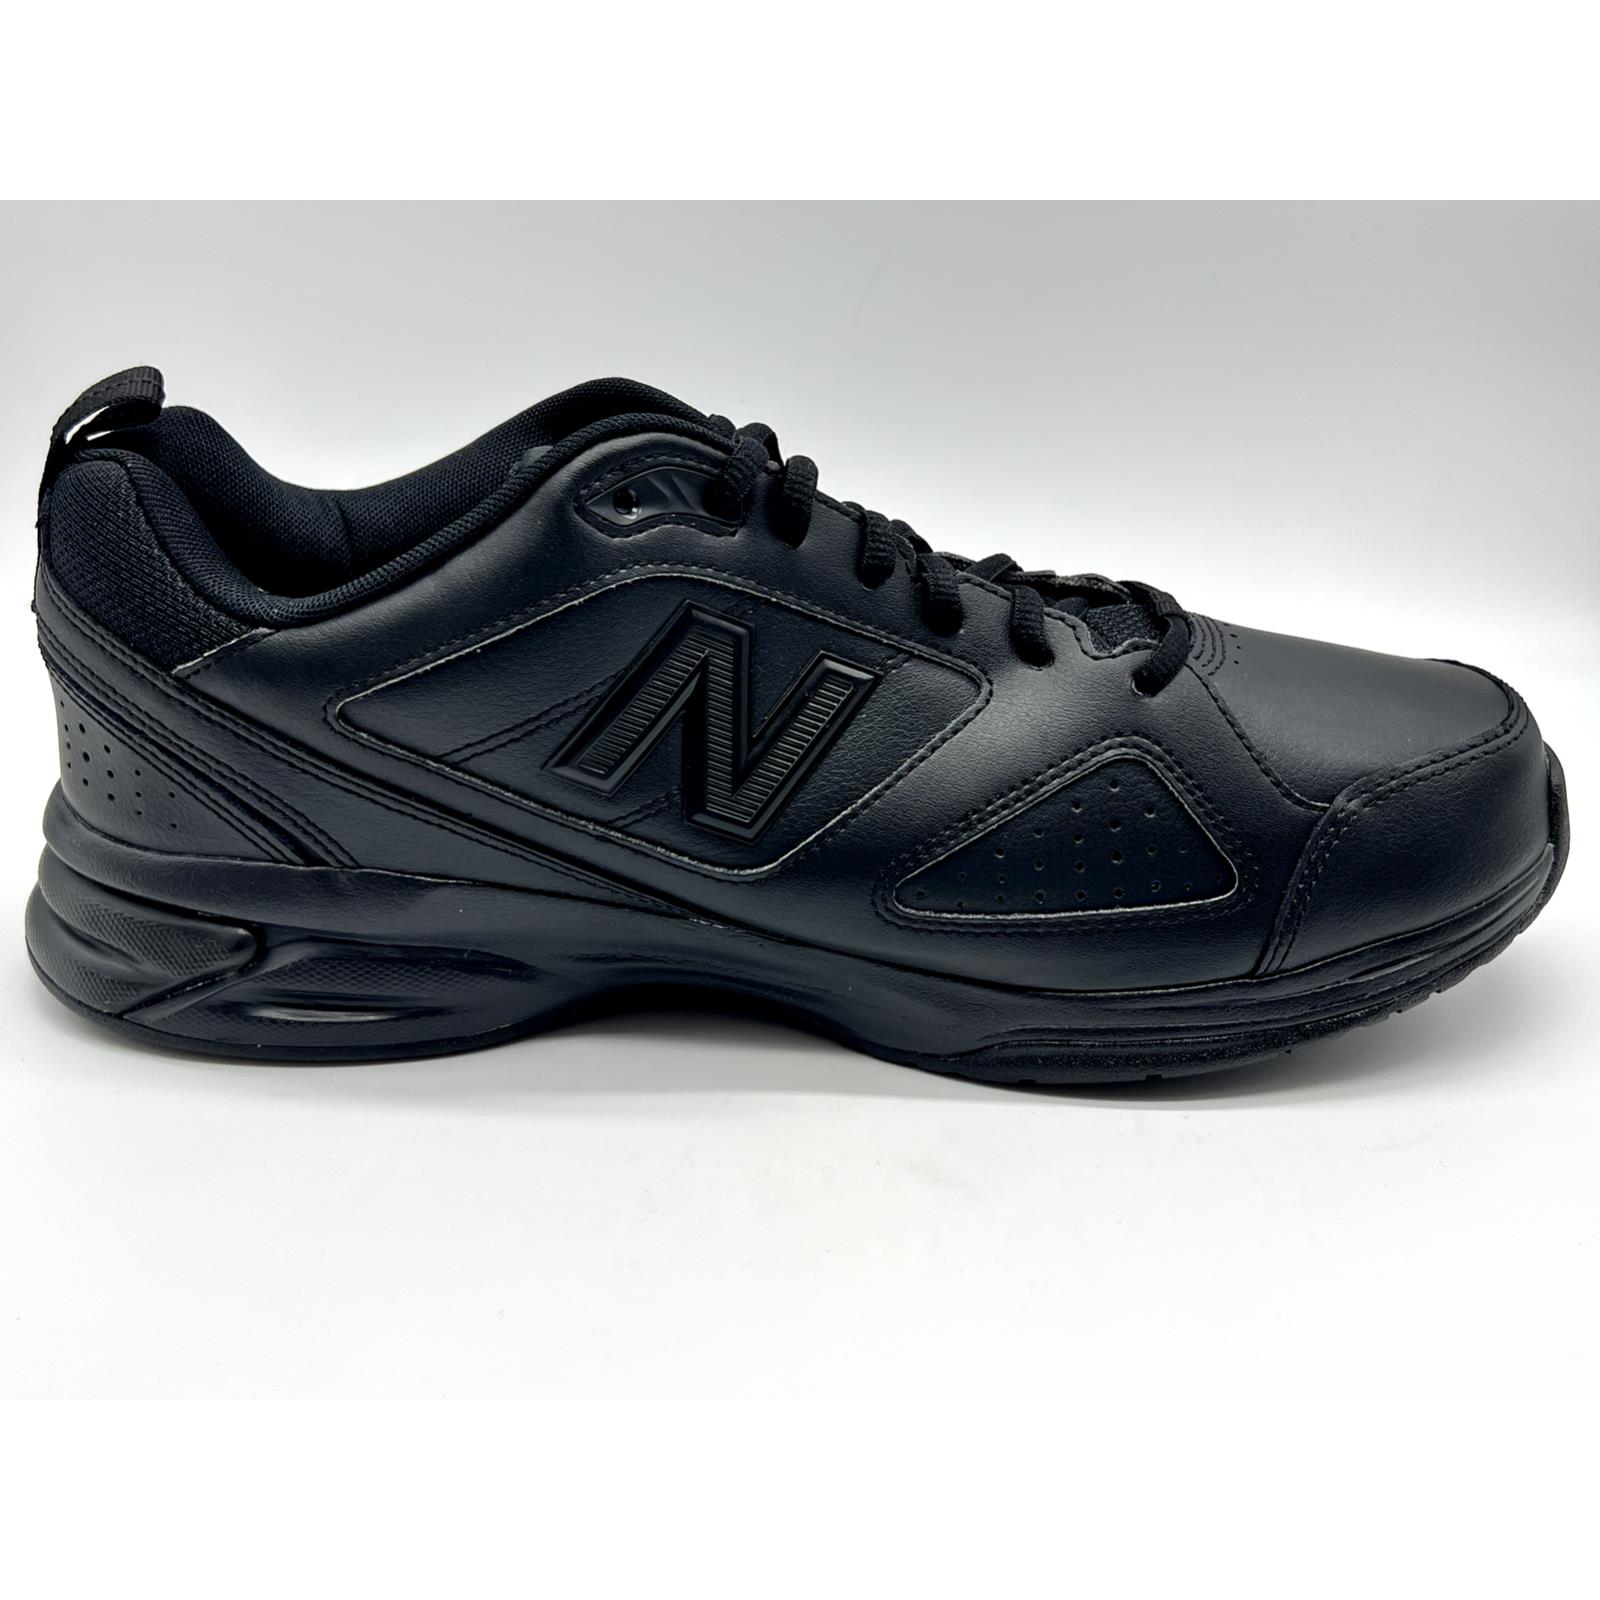 Mens Balance MX623AB3 Sneaker Shoe SZ 12.5 Wide In Black